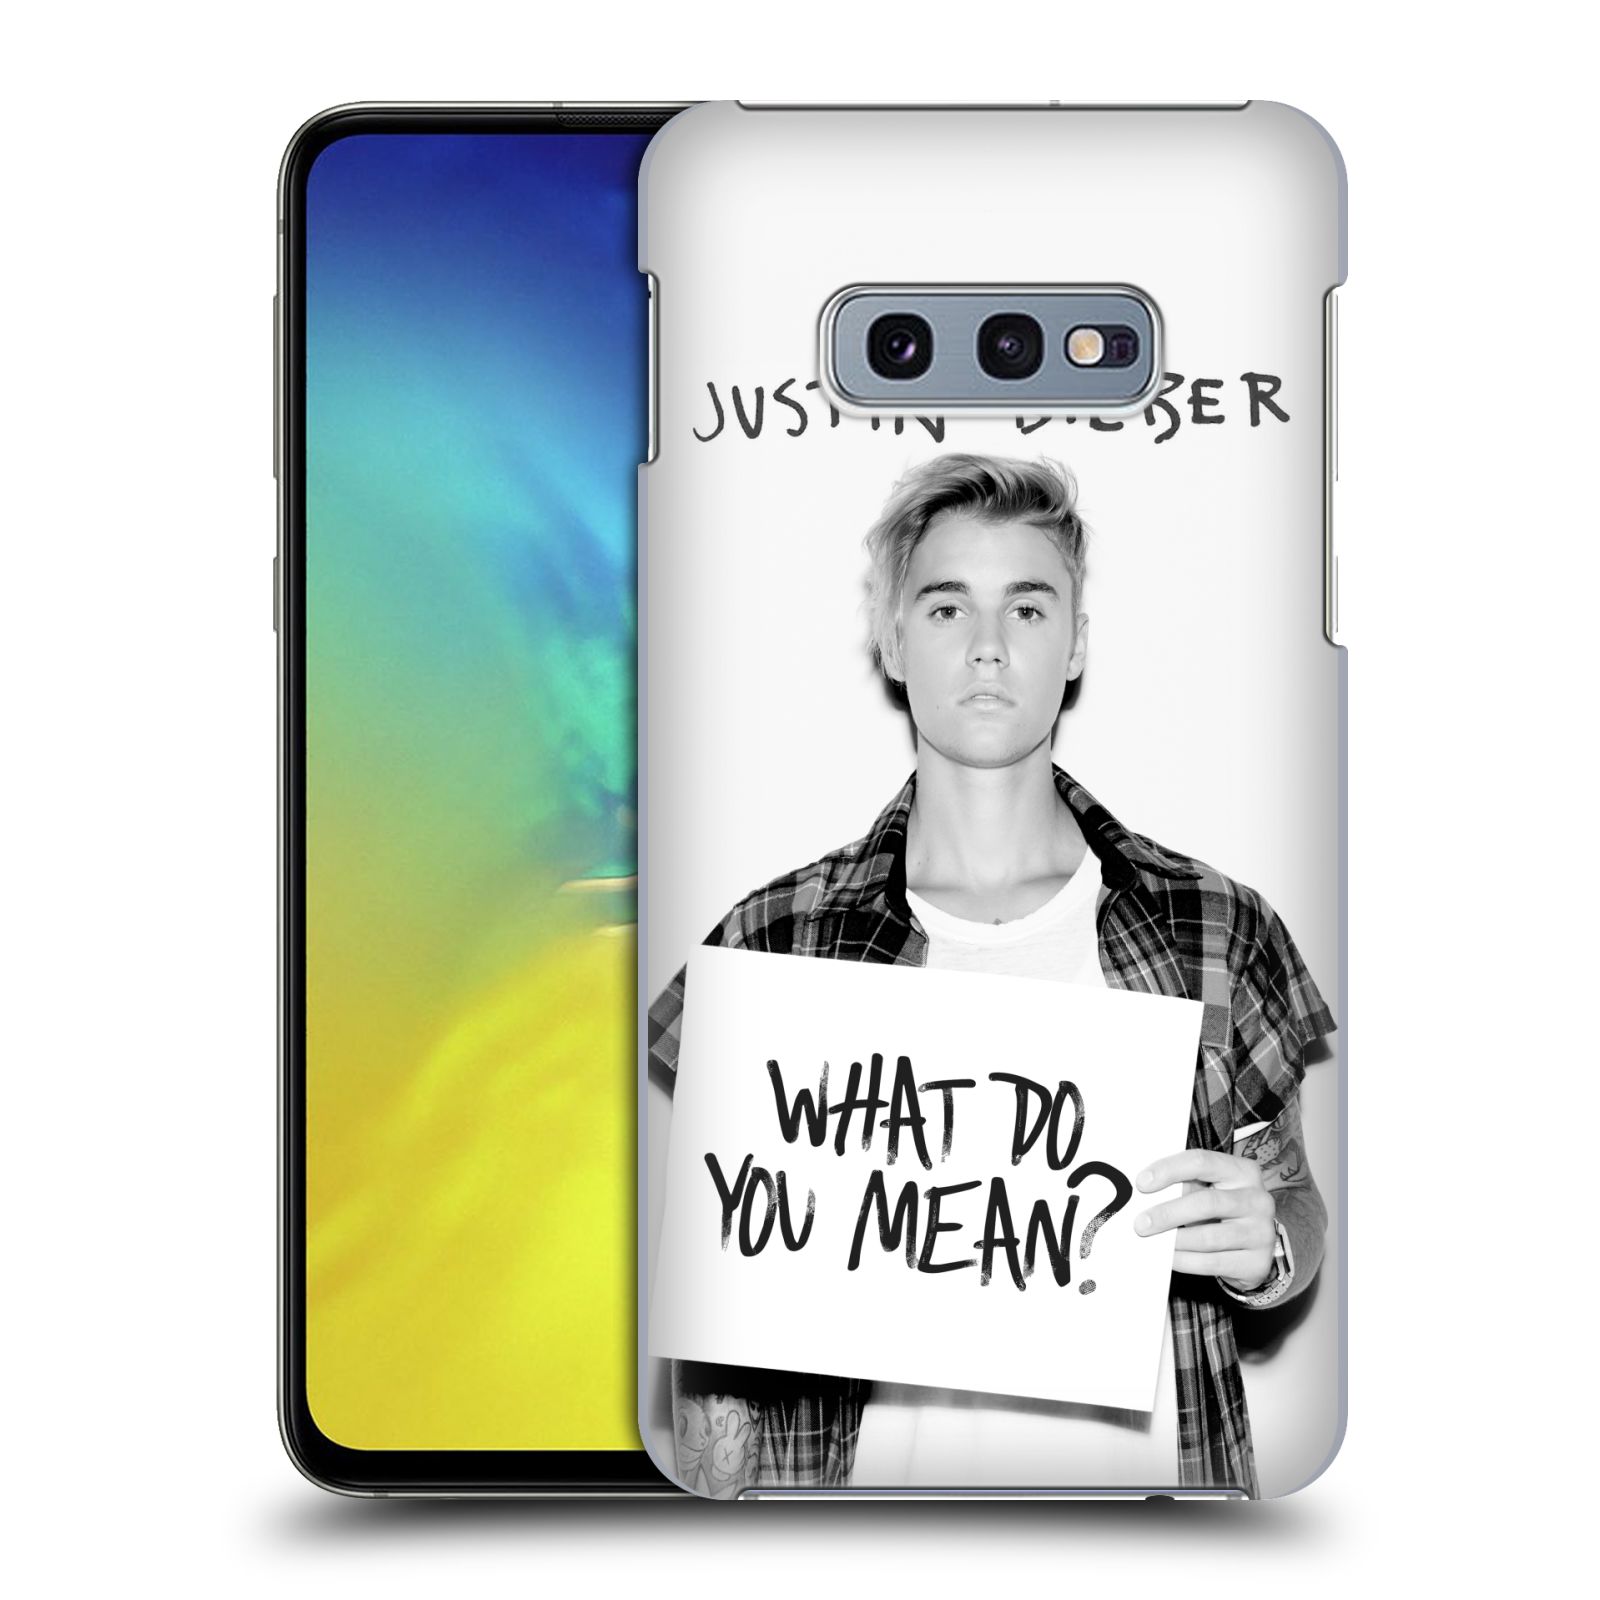 Pouzdro na mobil Samsung Galaxy S10e - HEAD CASE - Justin Bieber foto Purpose What do you mean